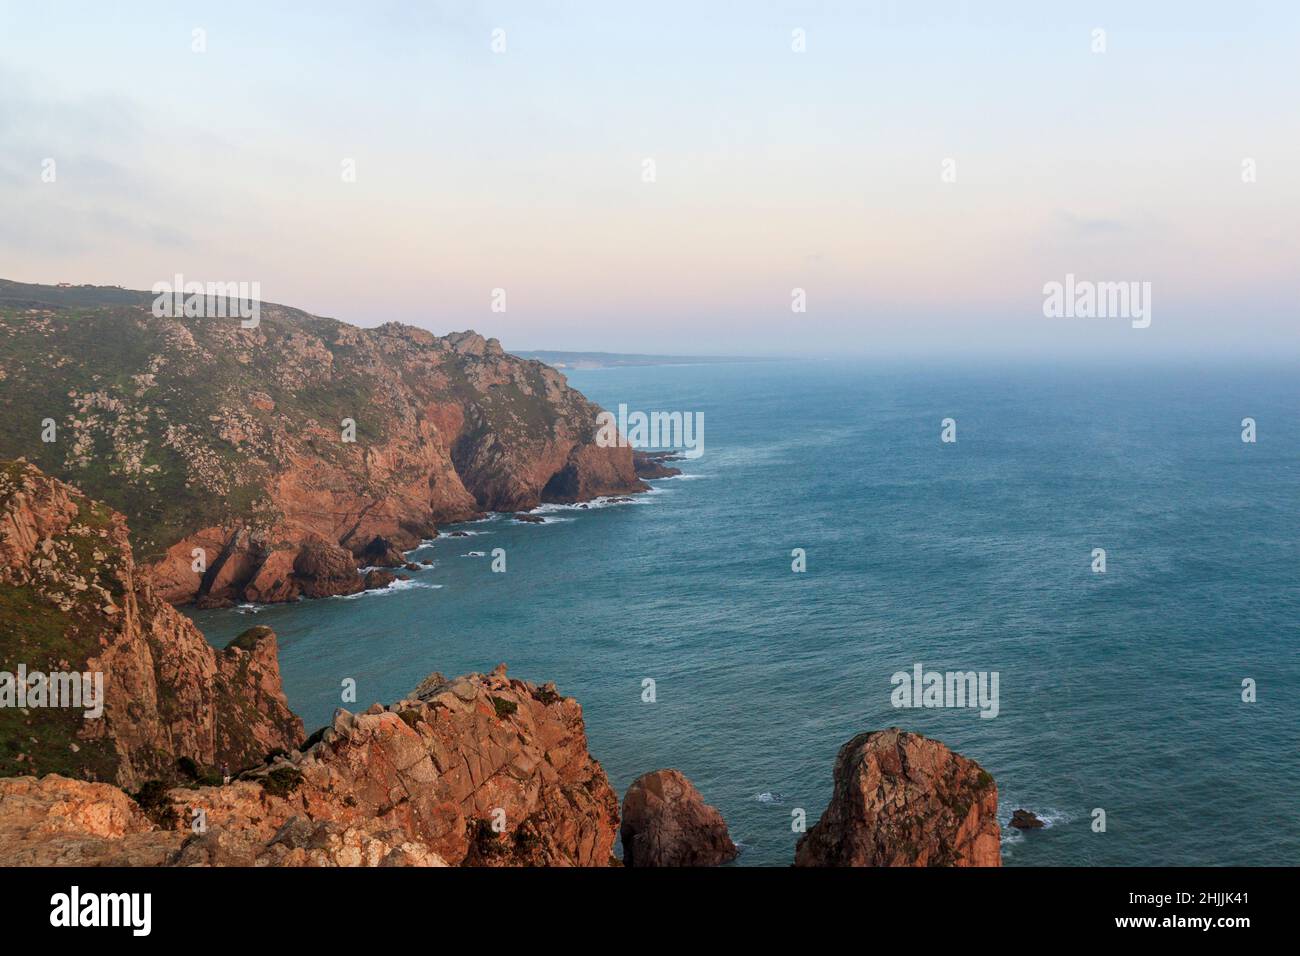 Acantilados sobre el océano Atlántico. El punto más occidental de Europa. El borde de la tierra. Cabo Roca (Cabo da Roca), Portugal. Foto de stock